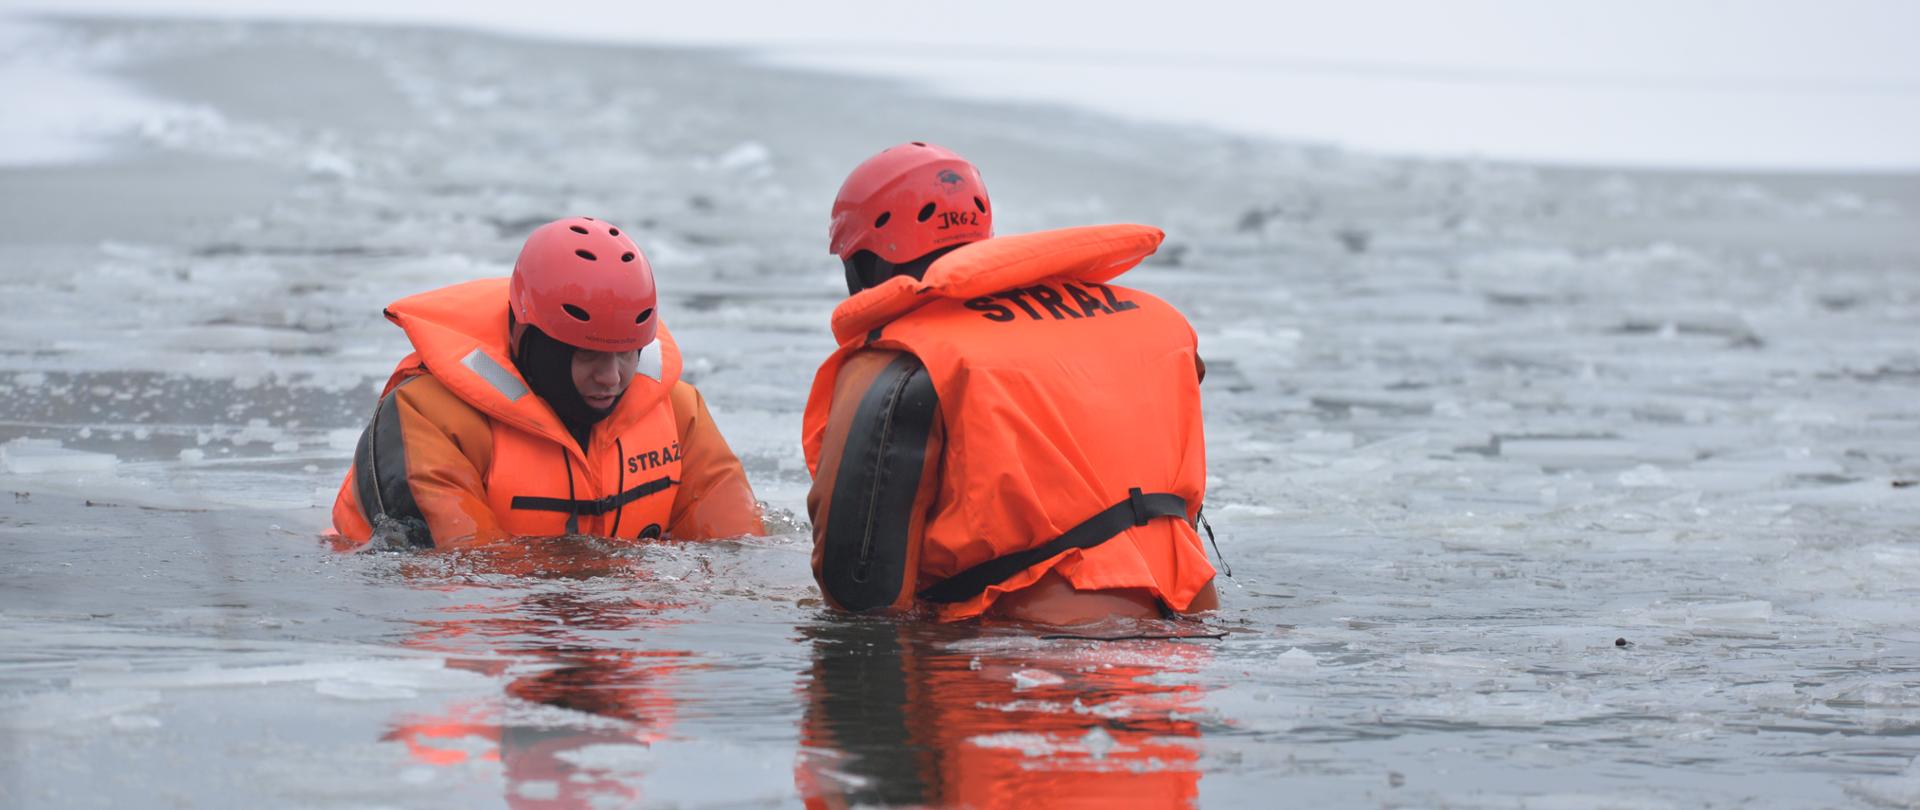 Ćwiczenia na lodzie JRG 2 - ratownicy w wodzie po załamaniu się lodu